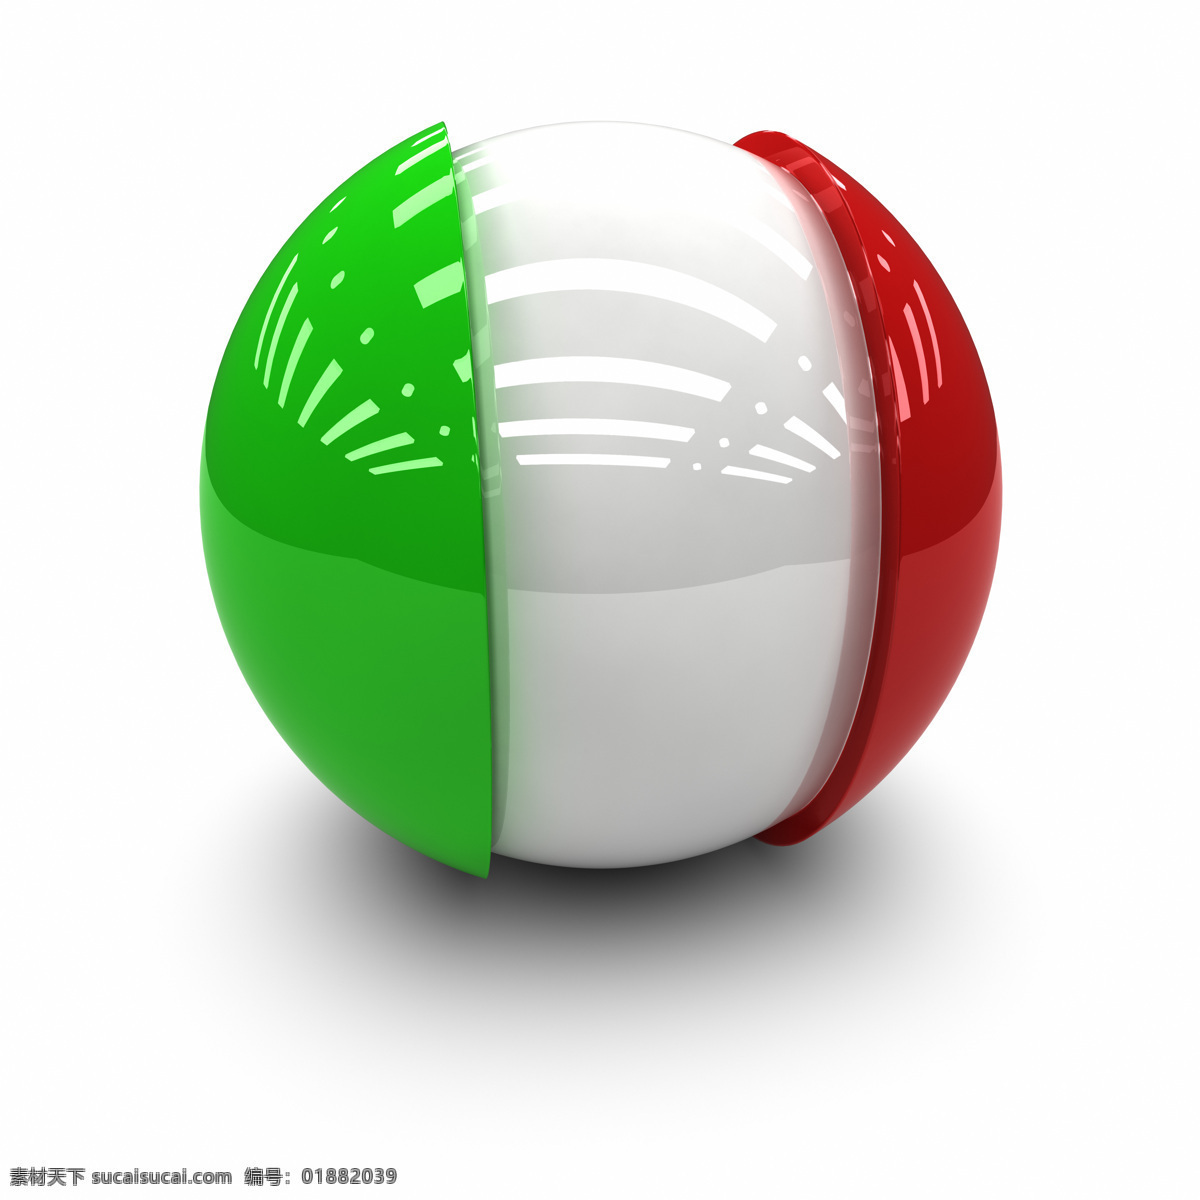 意大利 国旗 球体 意大利国旗 国旗球体 3d国旗 3d球体 国旗图片 生活百科